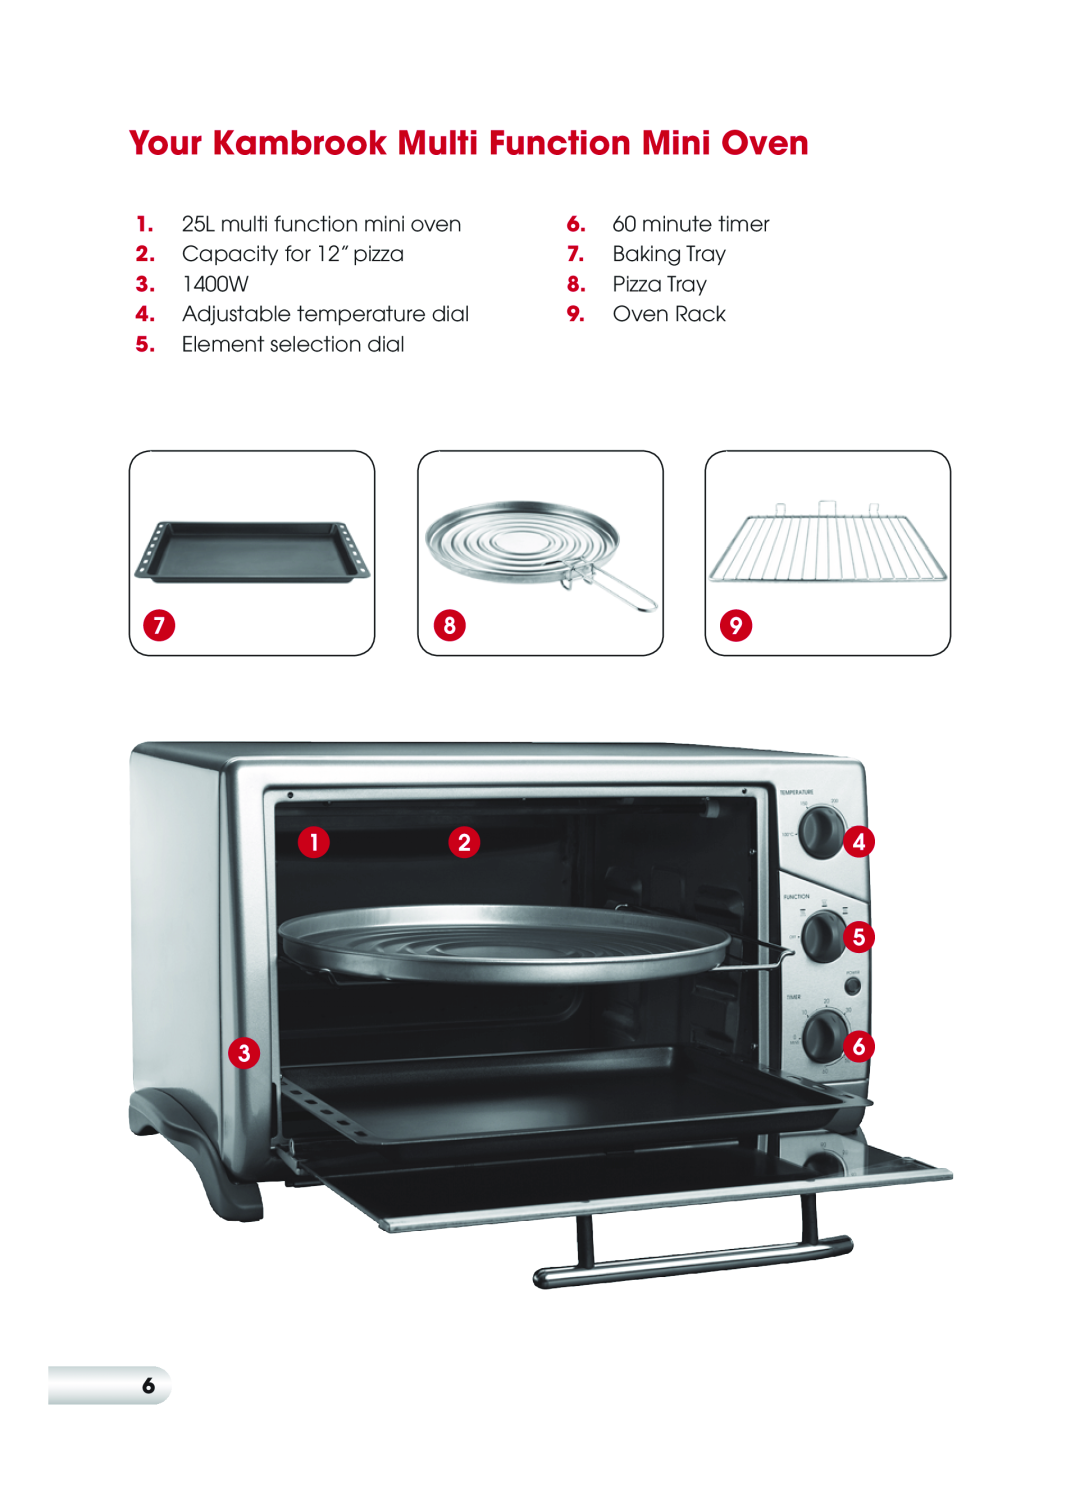 Kambrook KOT710 Your Kambrook Multi Function Mini Oven, 25L multi function mini oven, minute timer, Capacity for 12” pizza 